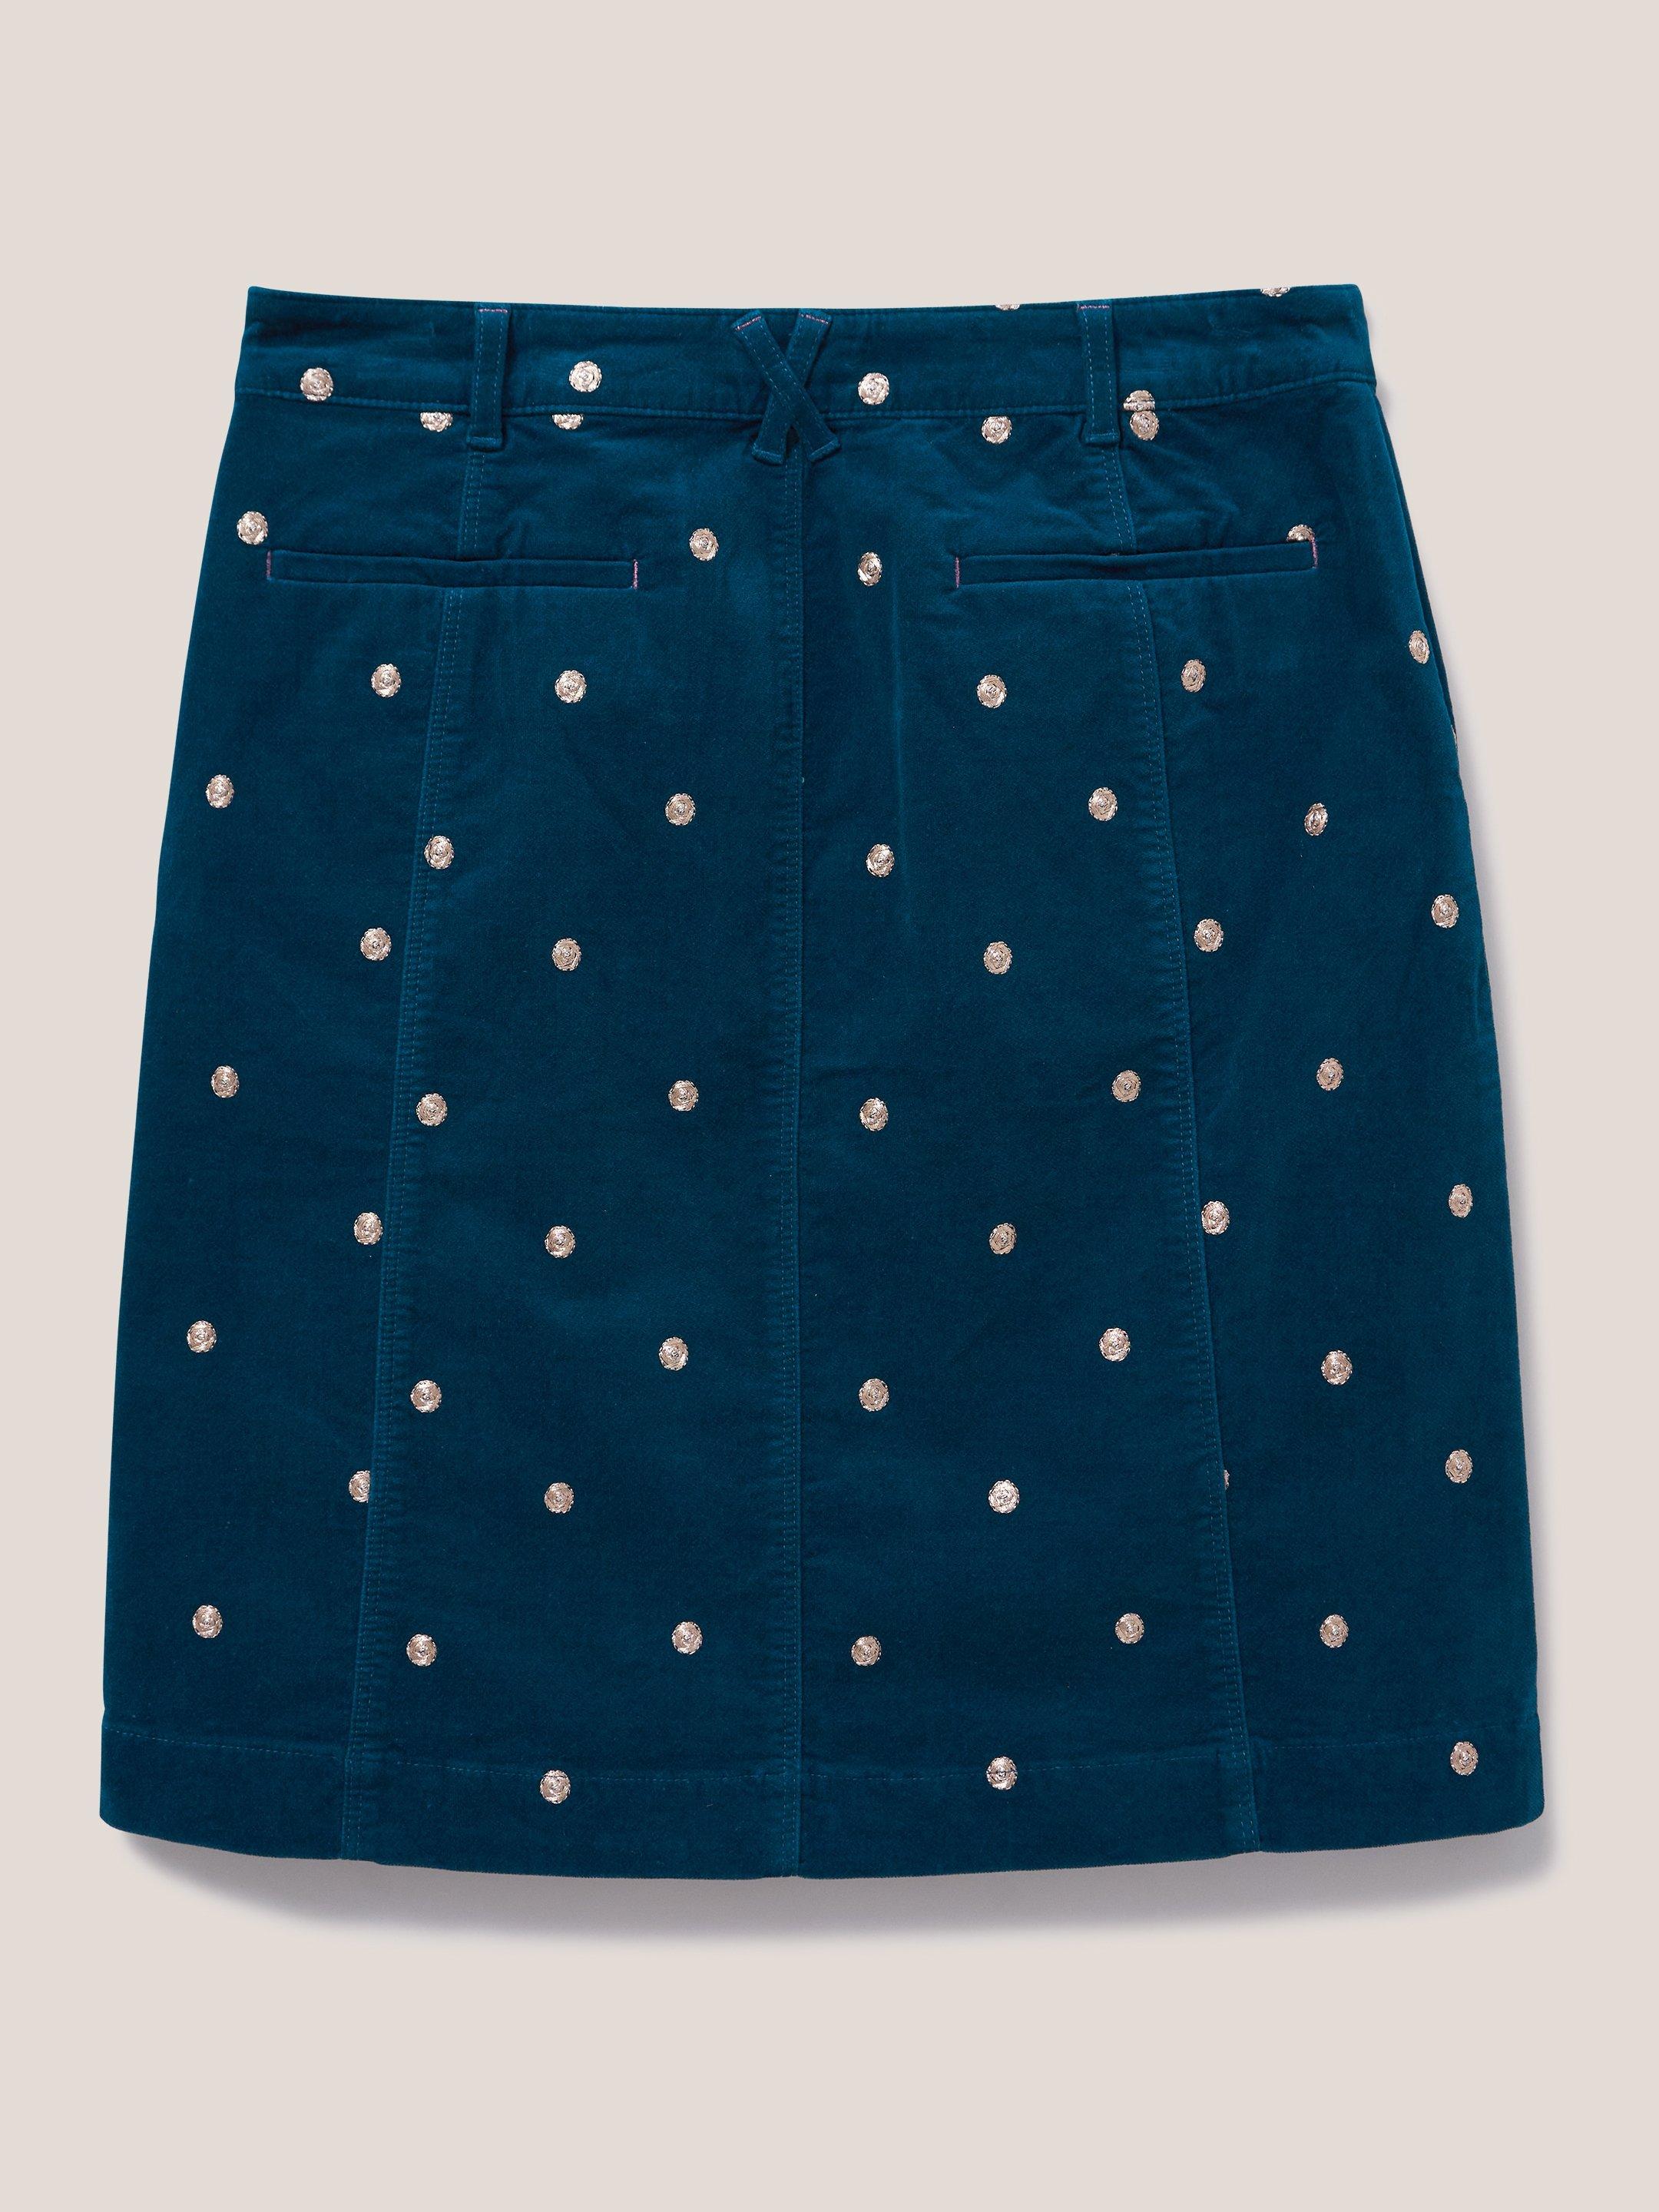 Josie Velvet Embroidered Skirt in MID TEAL - FLAT BACK